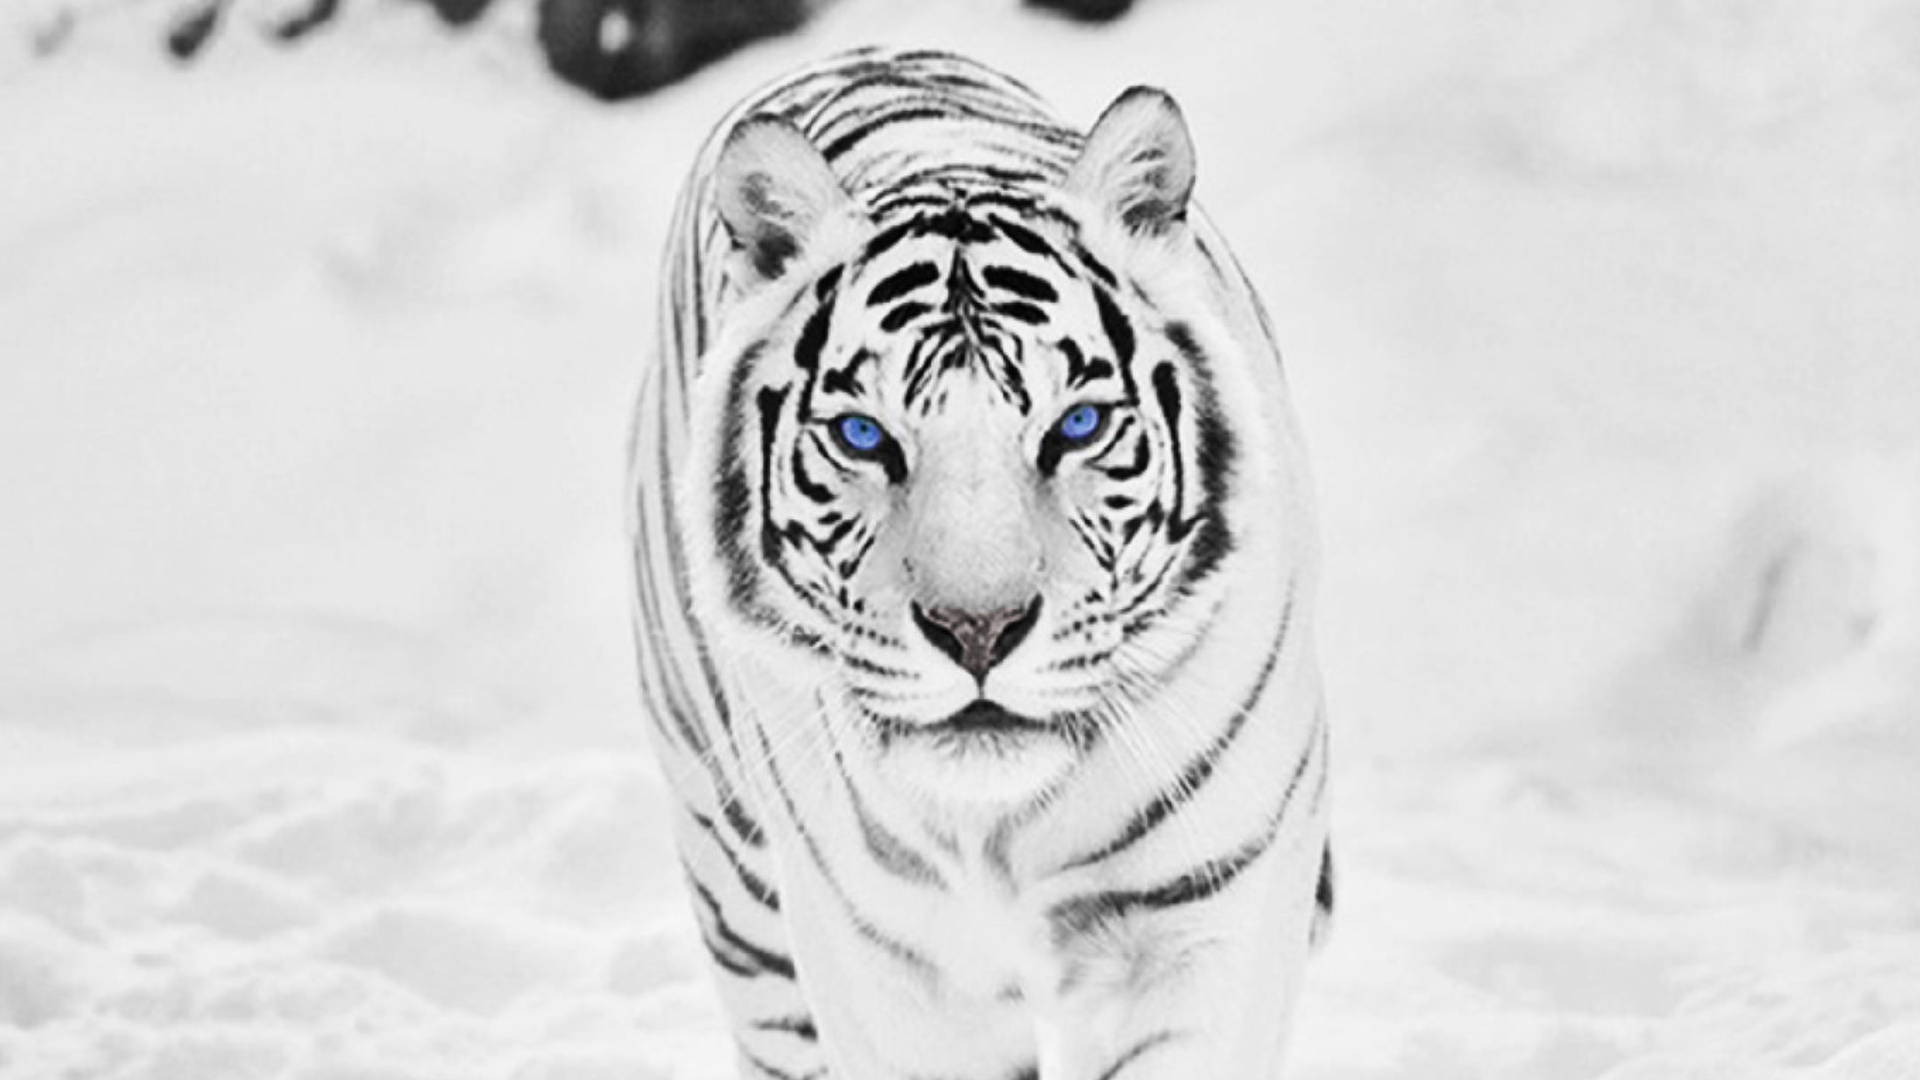 White tiger wallpaper hd wallpaper download free wallpaper